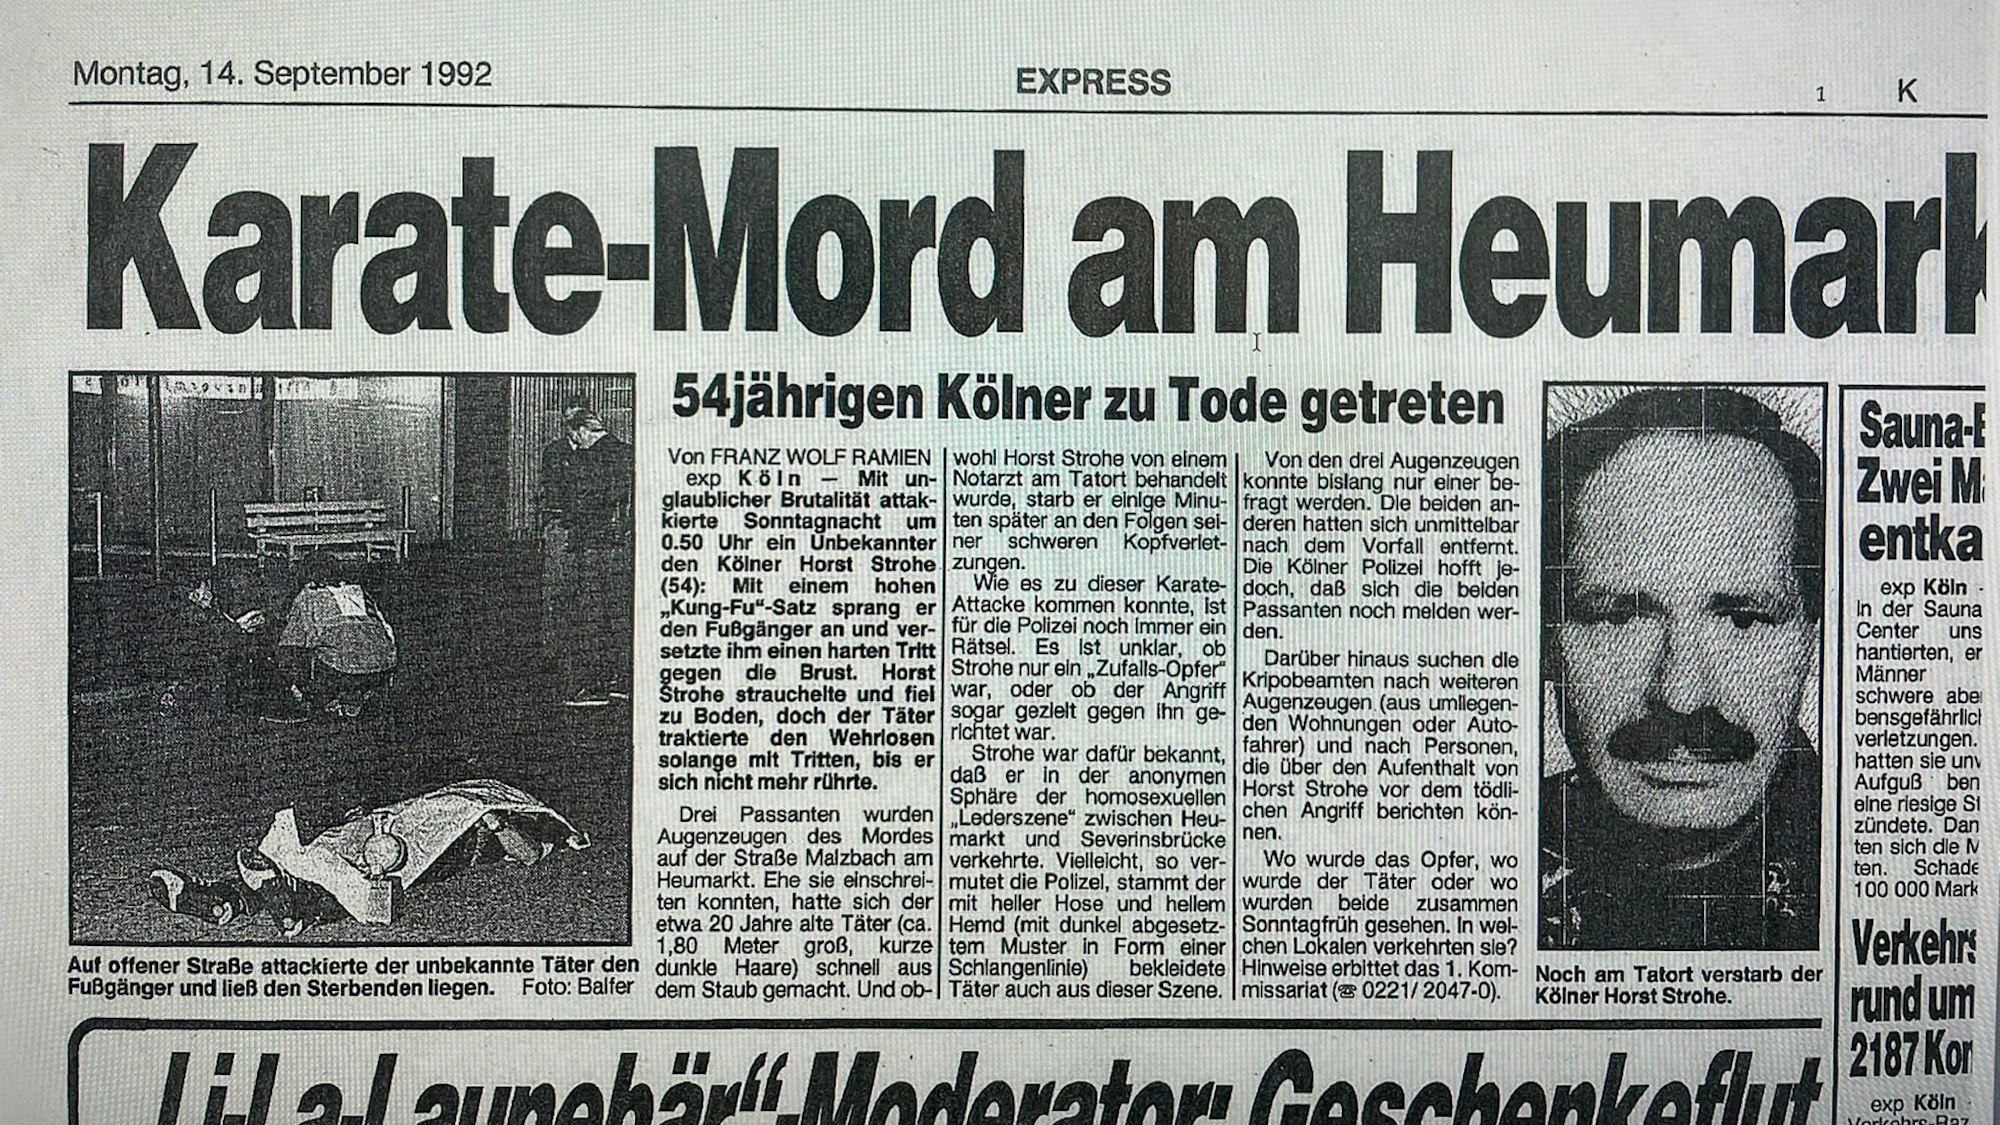 Ein Zeitungsausschnitt des Kölner EXPRESS vom  14. September 1992 über den getöteten Horst Strohe.